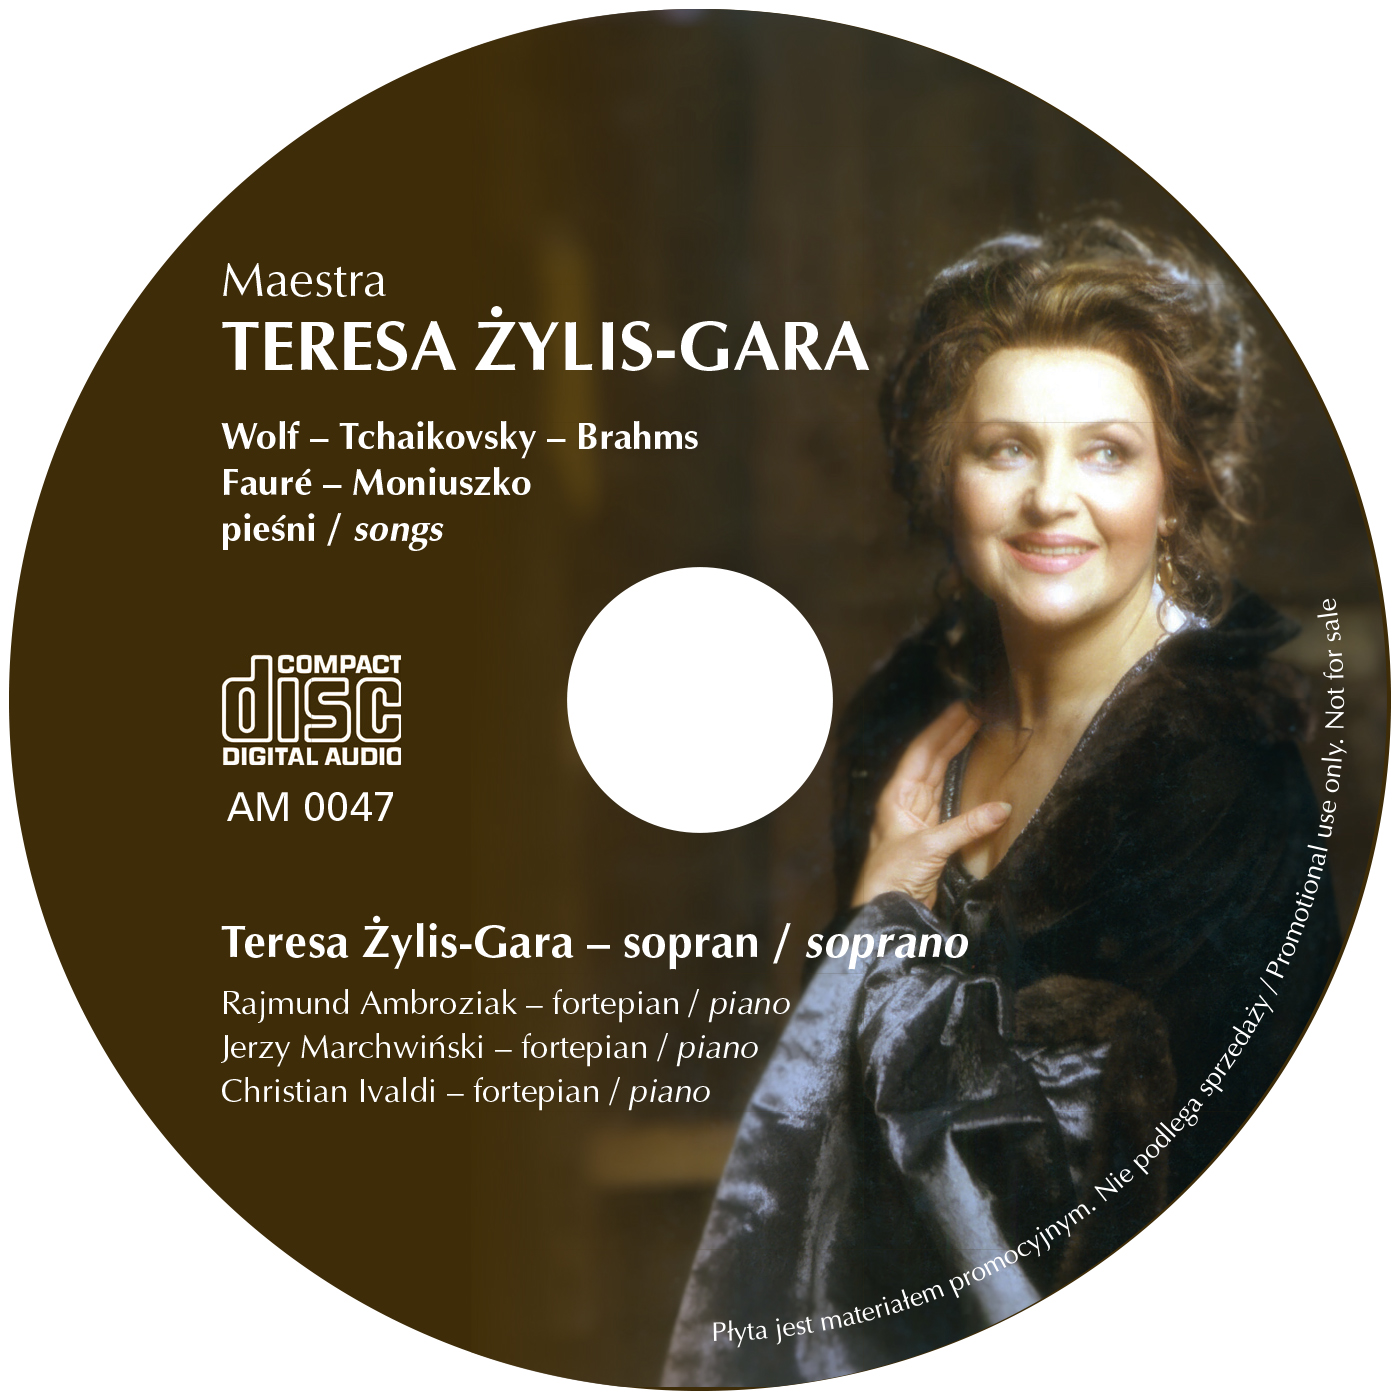 Maestra Teresa Żylis-Gara płyta